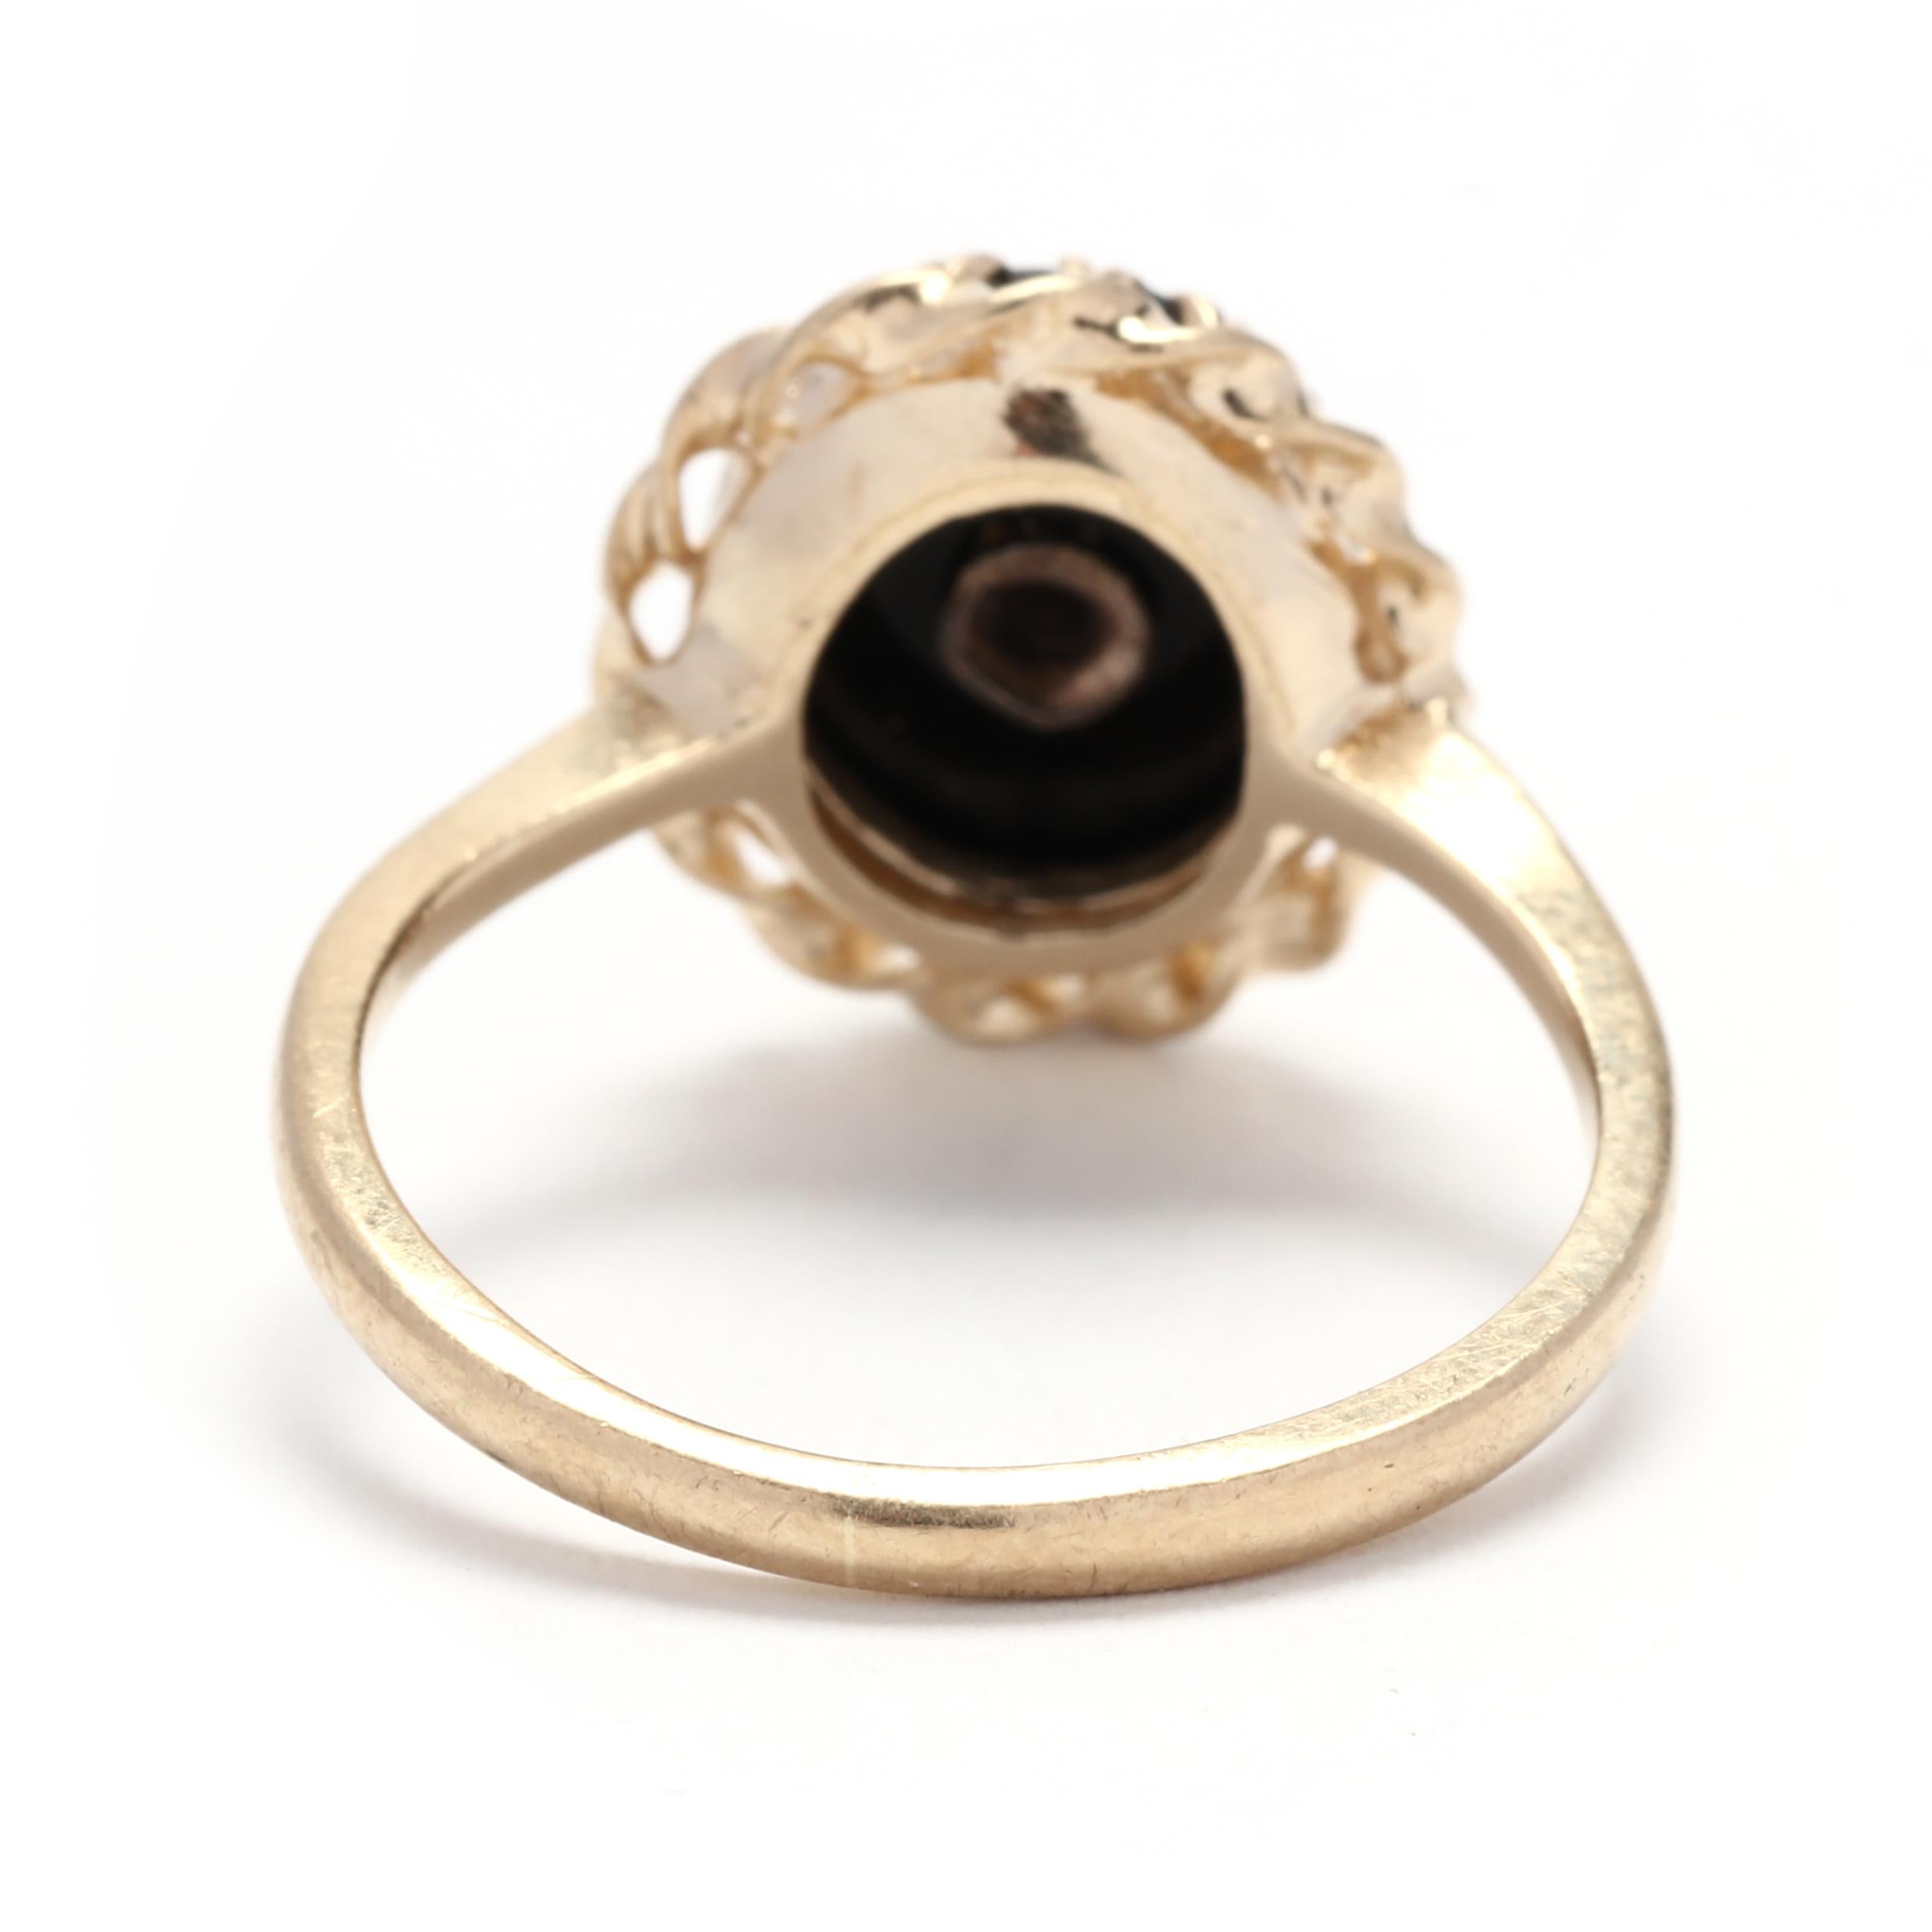 Ovaler Ring mit Diamant und schwarzem Onyx, 10k Gelbgold, Ring Größe 5,5, Ausgefallener Ring  (Ovalschliff)